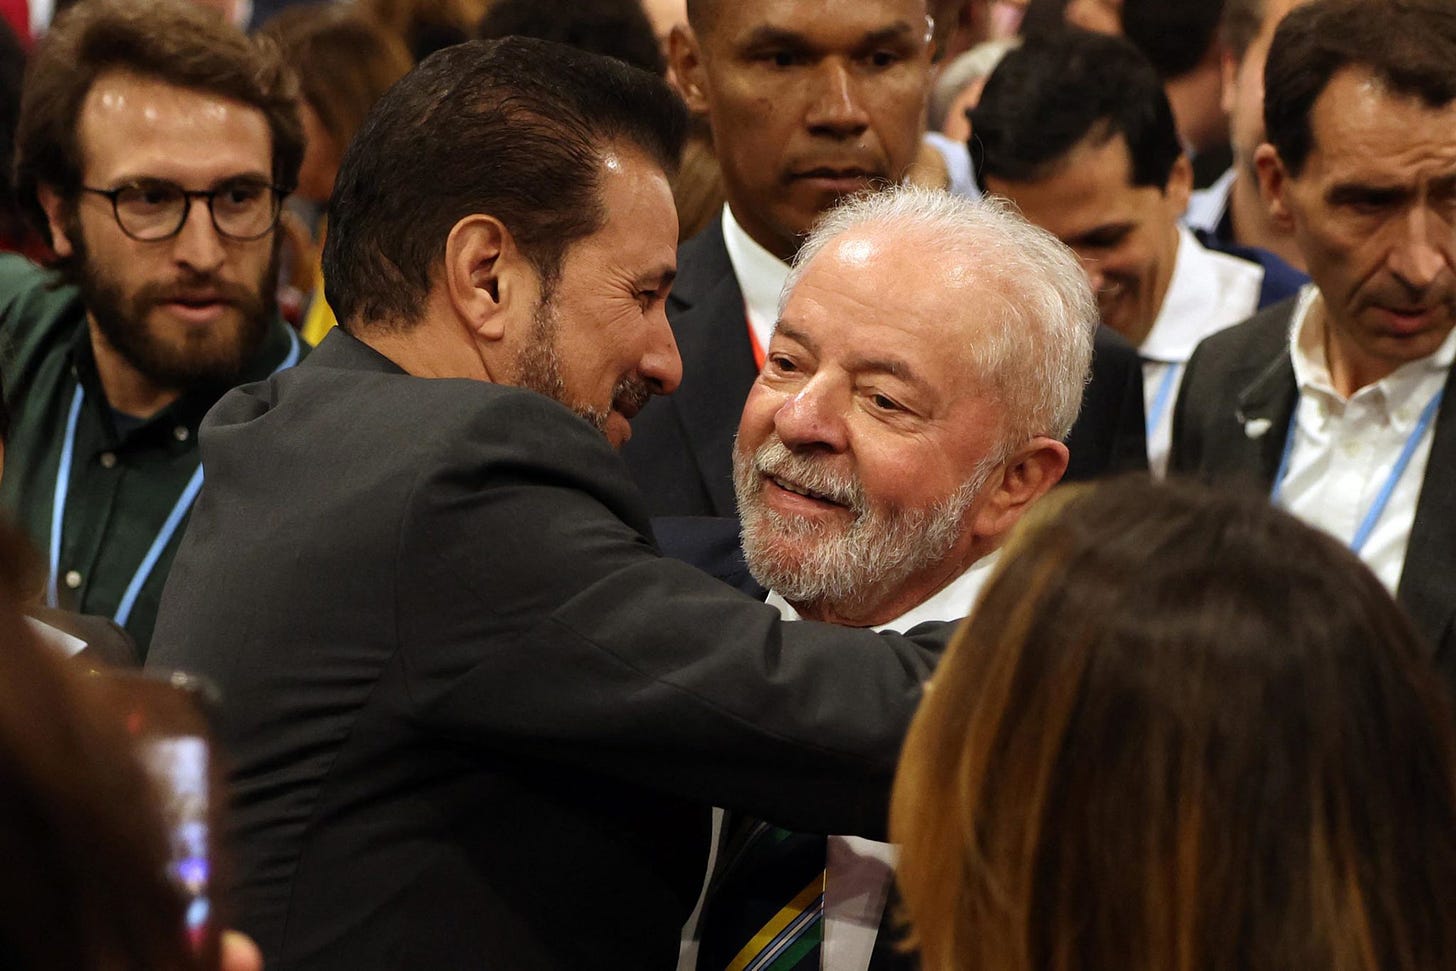 Mohamed Farrara Lashtar se maneja principalmente en las sombras y, según una fuente diplomática estadounidense, reportaba directamente a la seguridad libia. En la foto, con el actual presidente brasileño Lula da Silva.